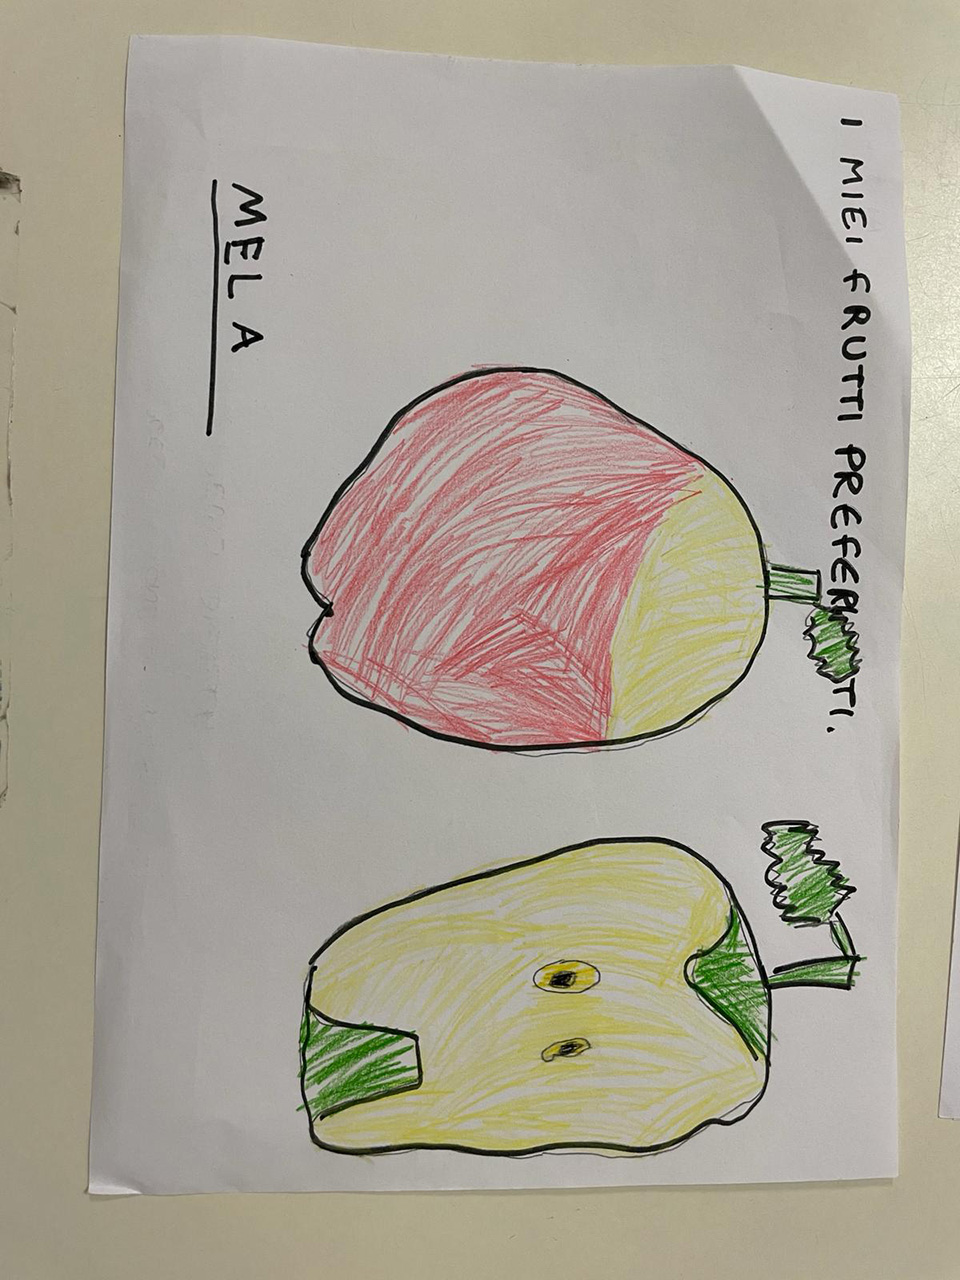 disegno creato da bambino di una mela